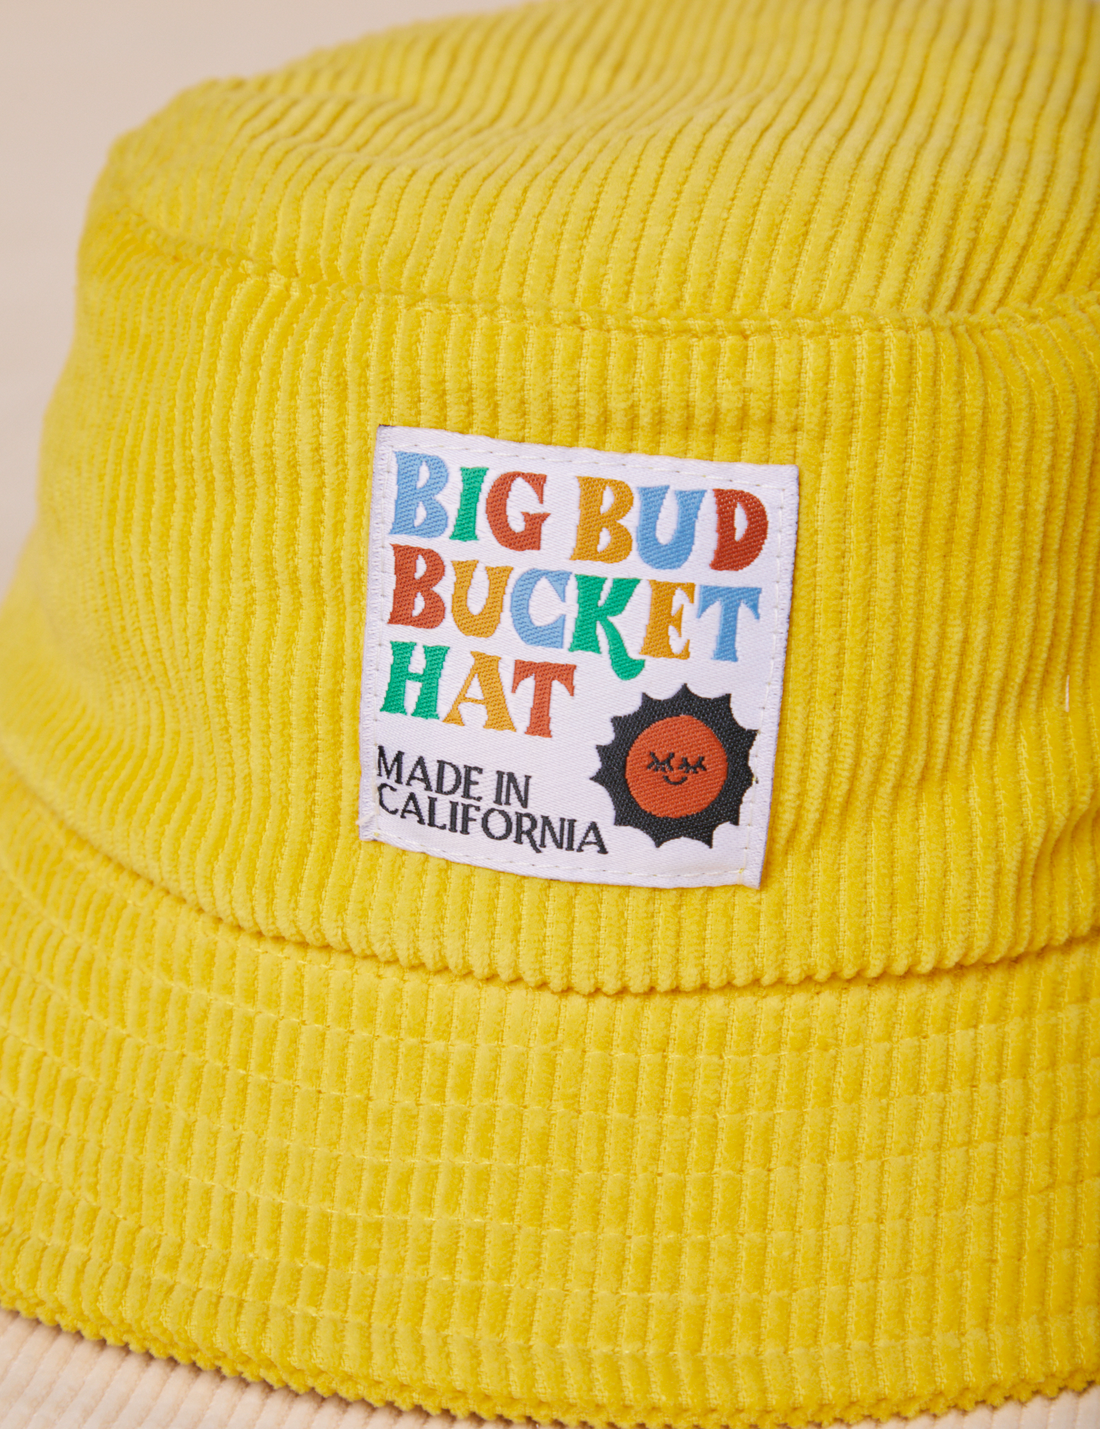 Big Bud Bucket Hat in golden yellow